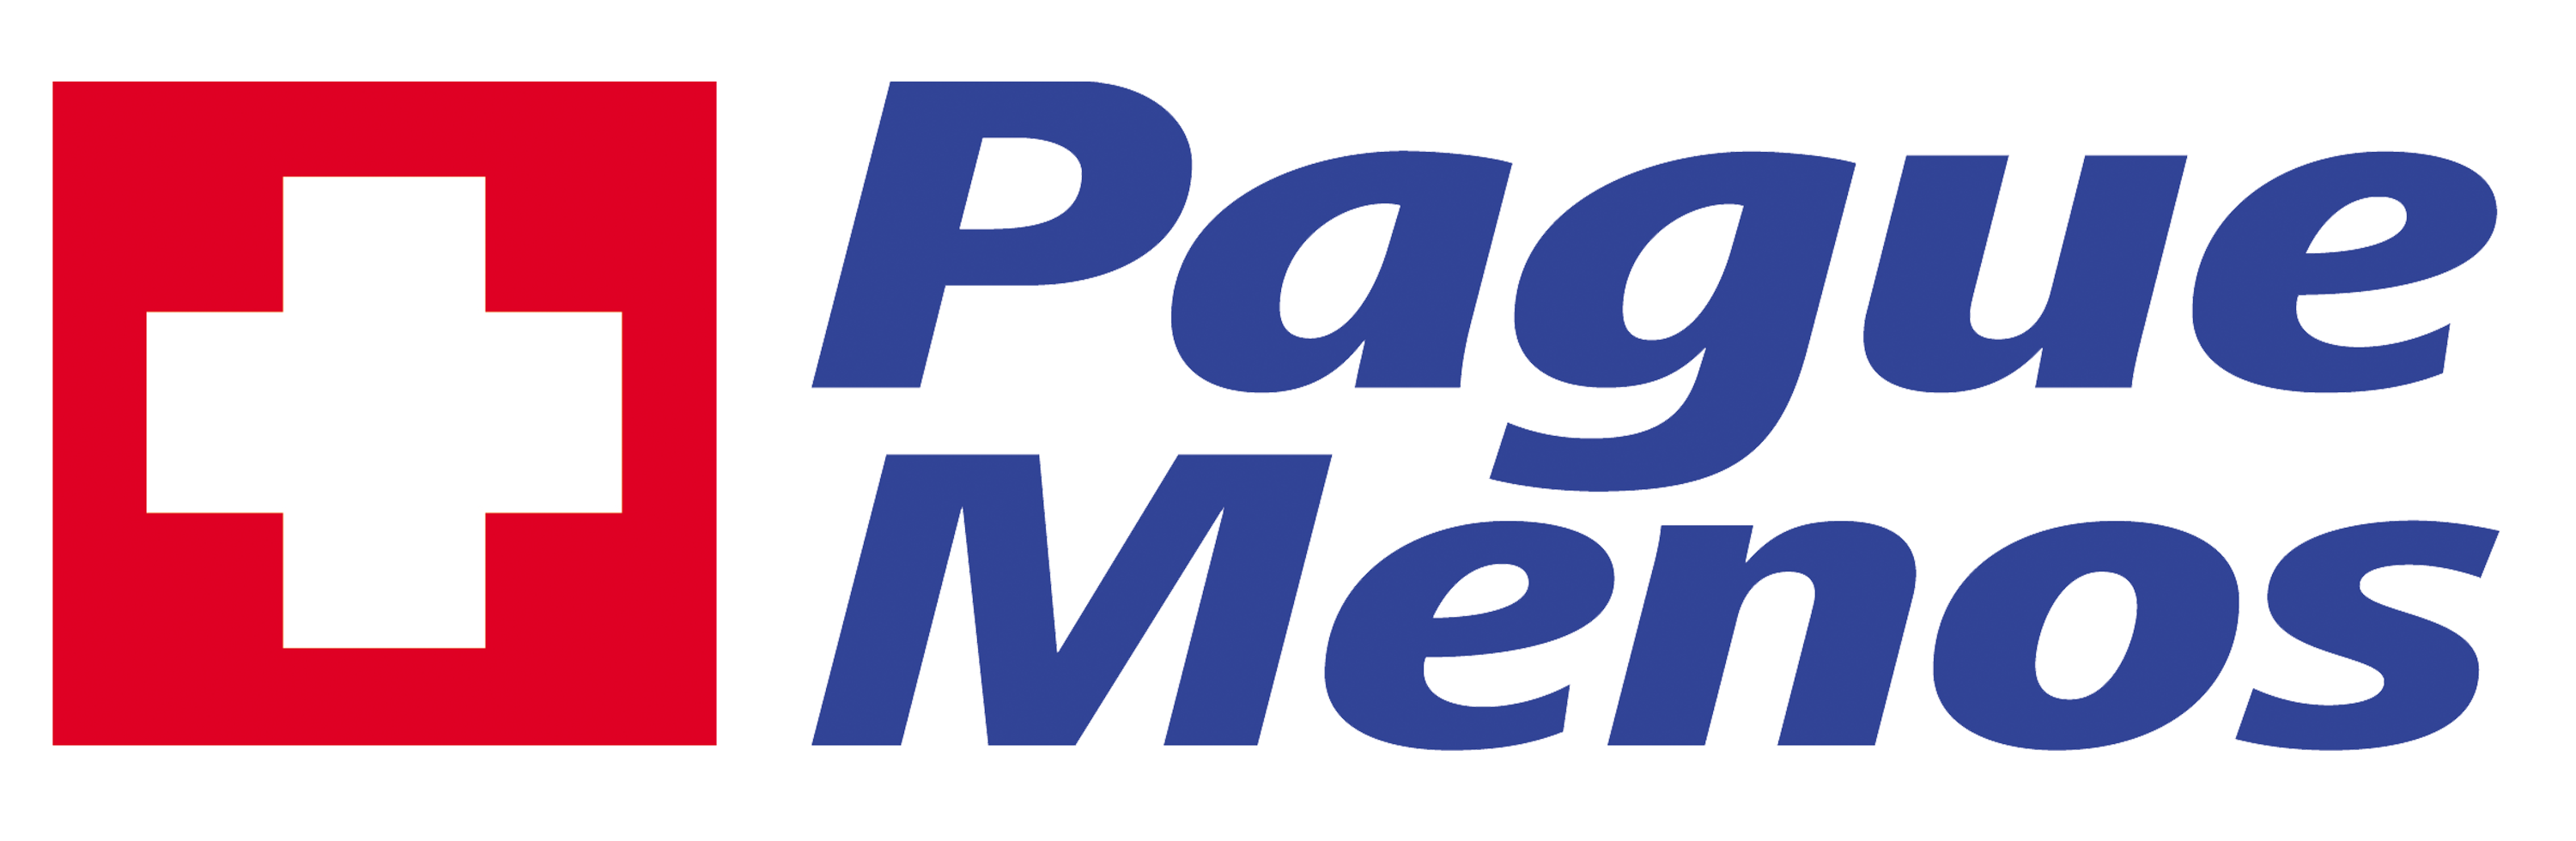 Farmacia Pague Menos - Itaituba - PA